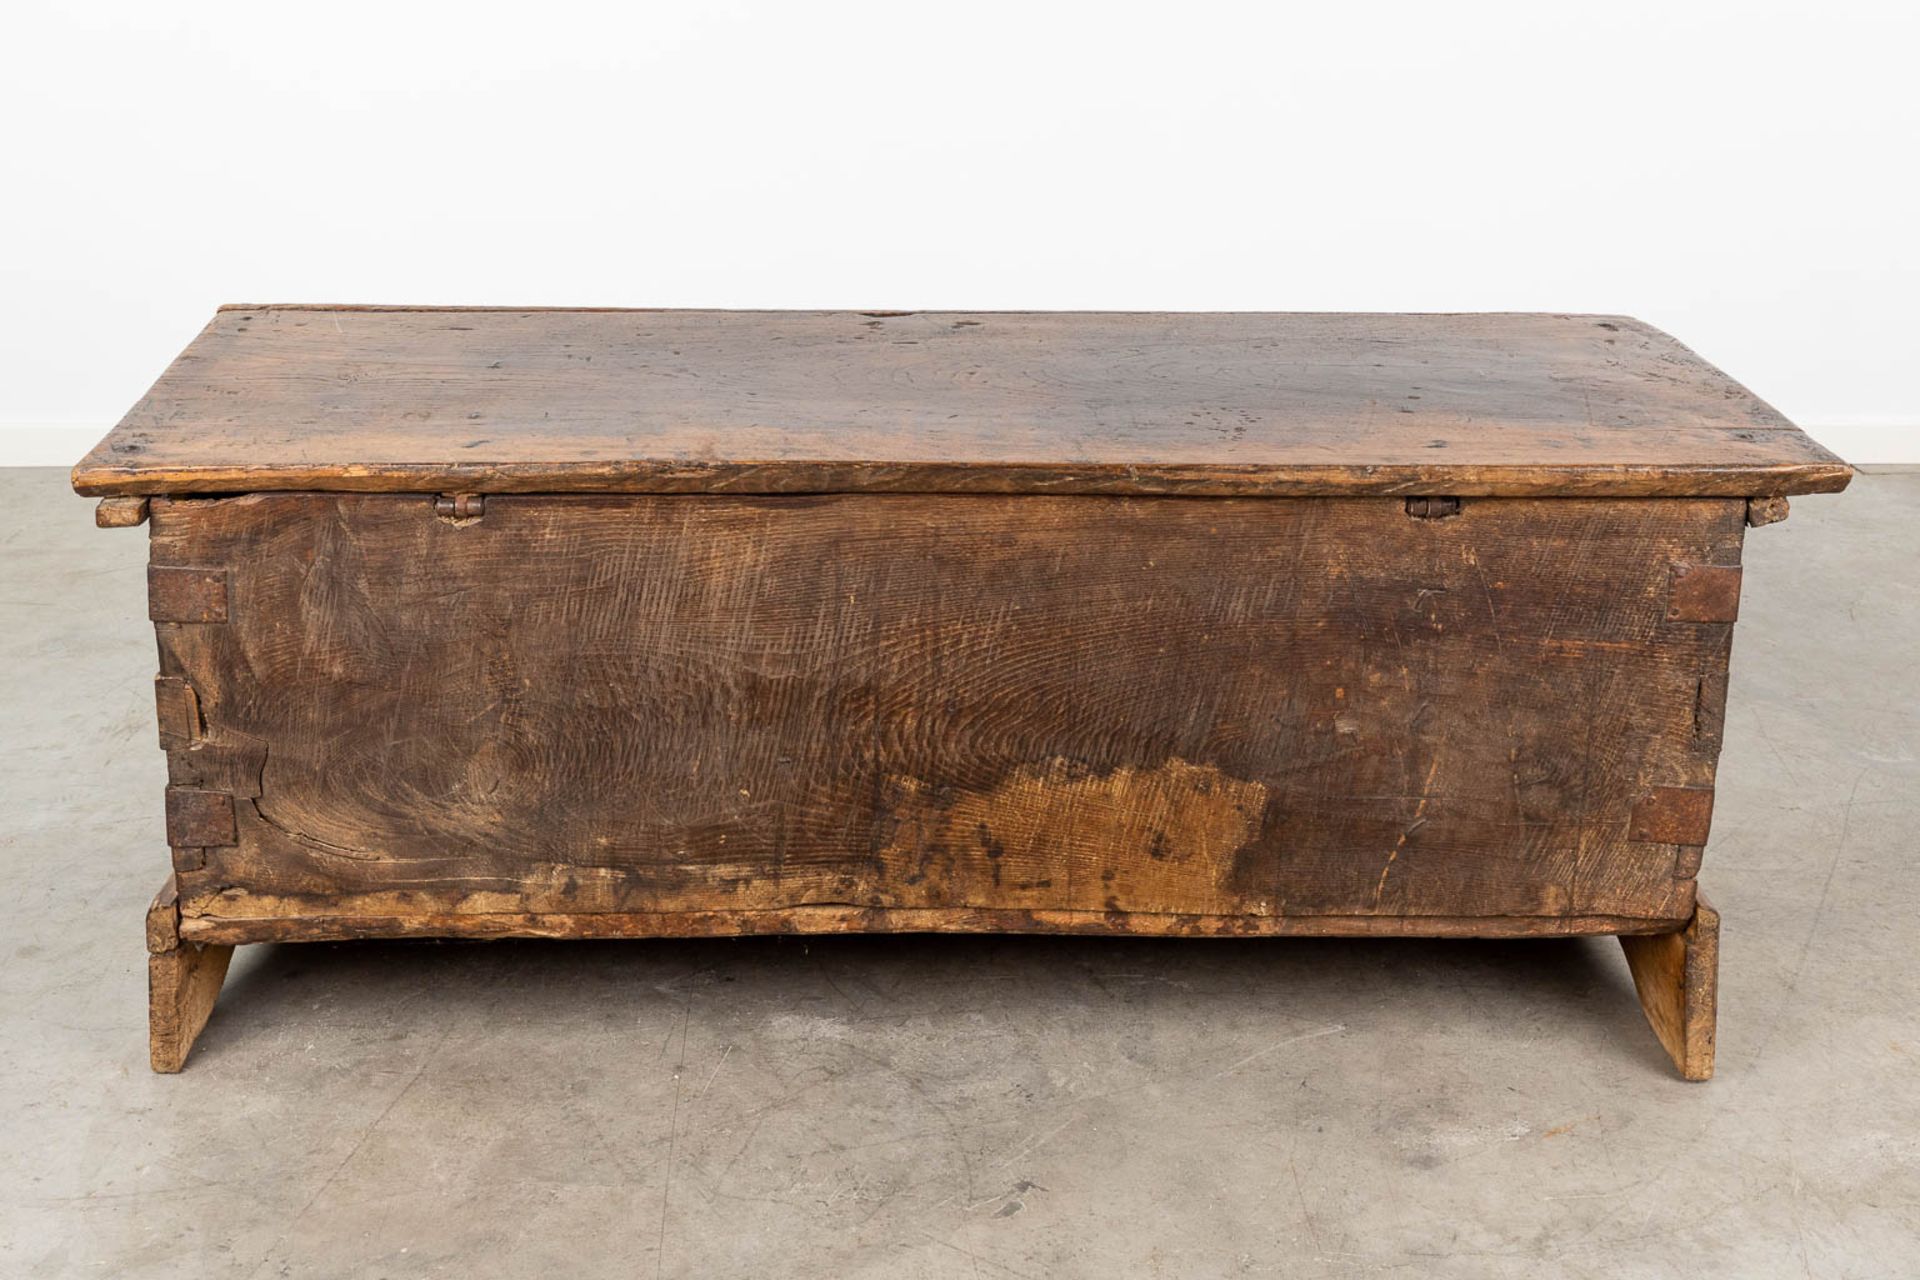 An antique chest, made of sculptured wood panels. (L:48 x W:136 x H:55 cm) - Bild 6 aus 18